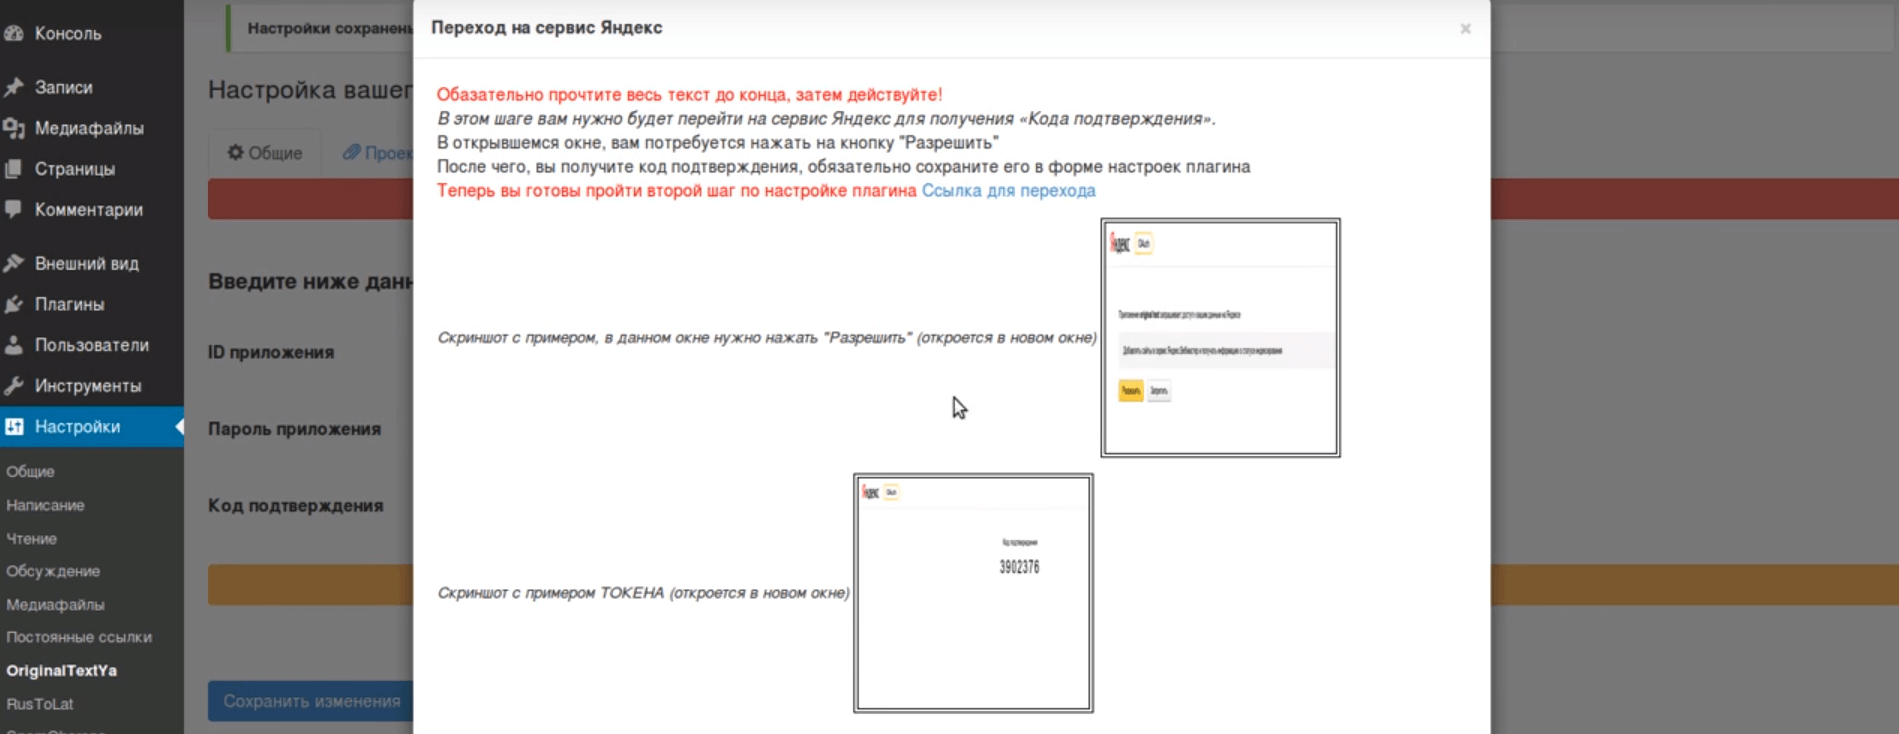 Установка плагина Original texts Yandex WebMaster Инструкция